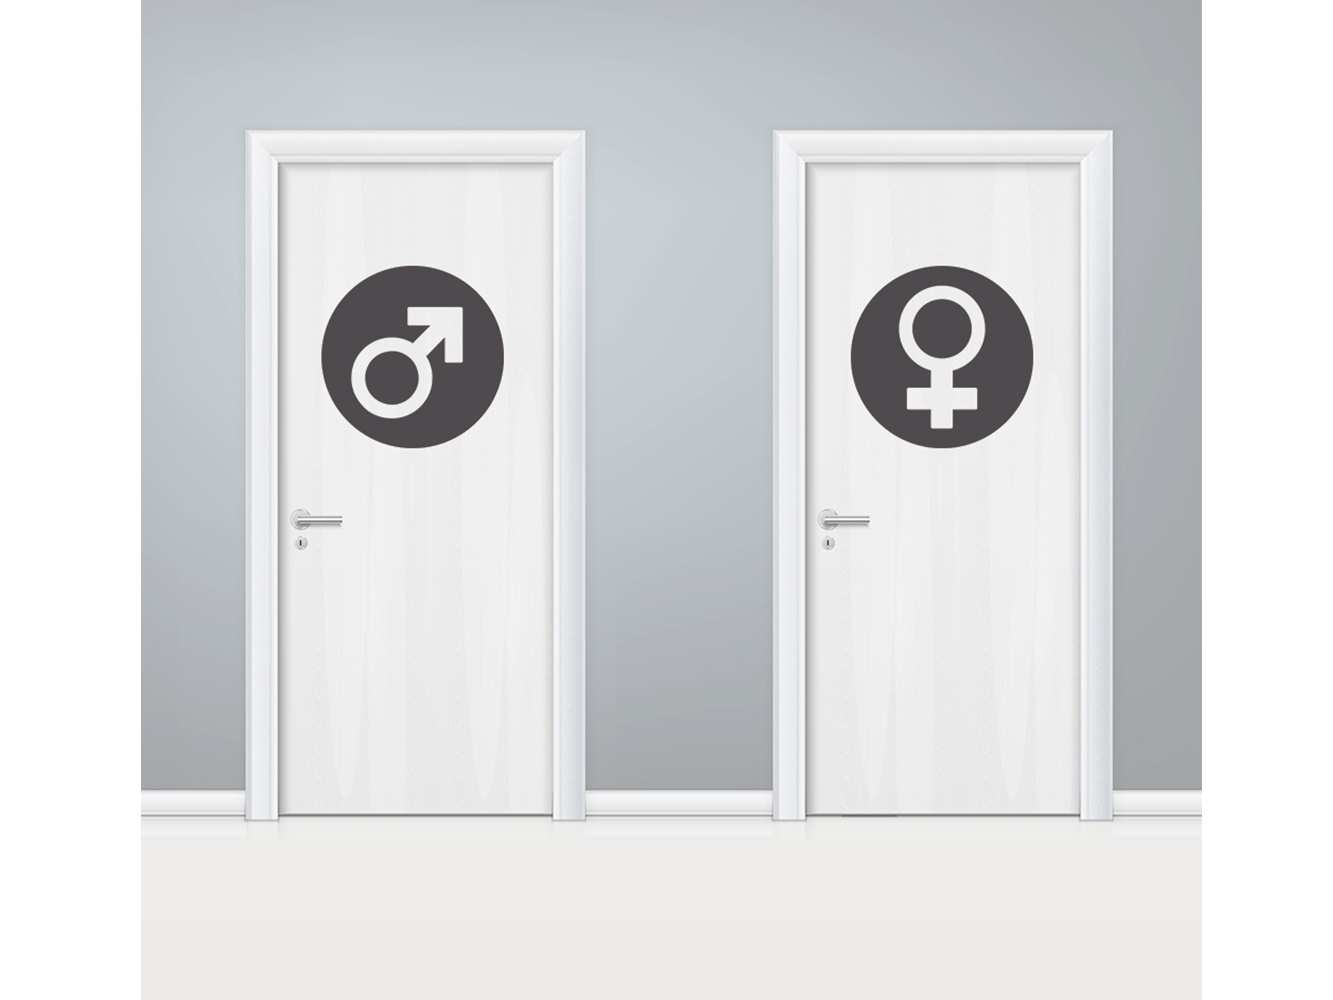 Vinilo Puerta WC Circulos Masculino y Femenino | Carteles XXL - Impresión carteleria publicitaria